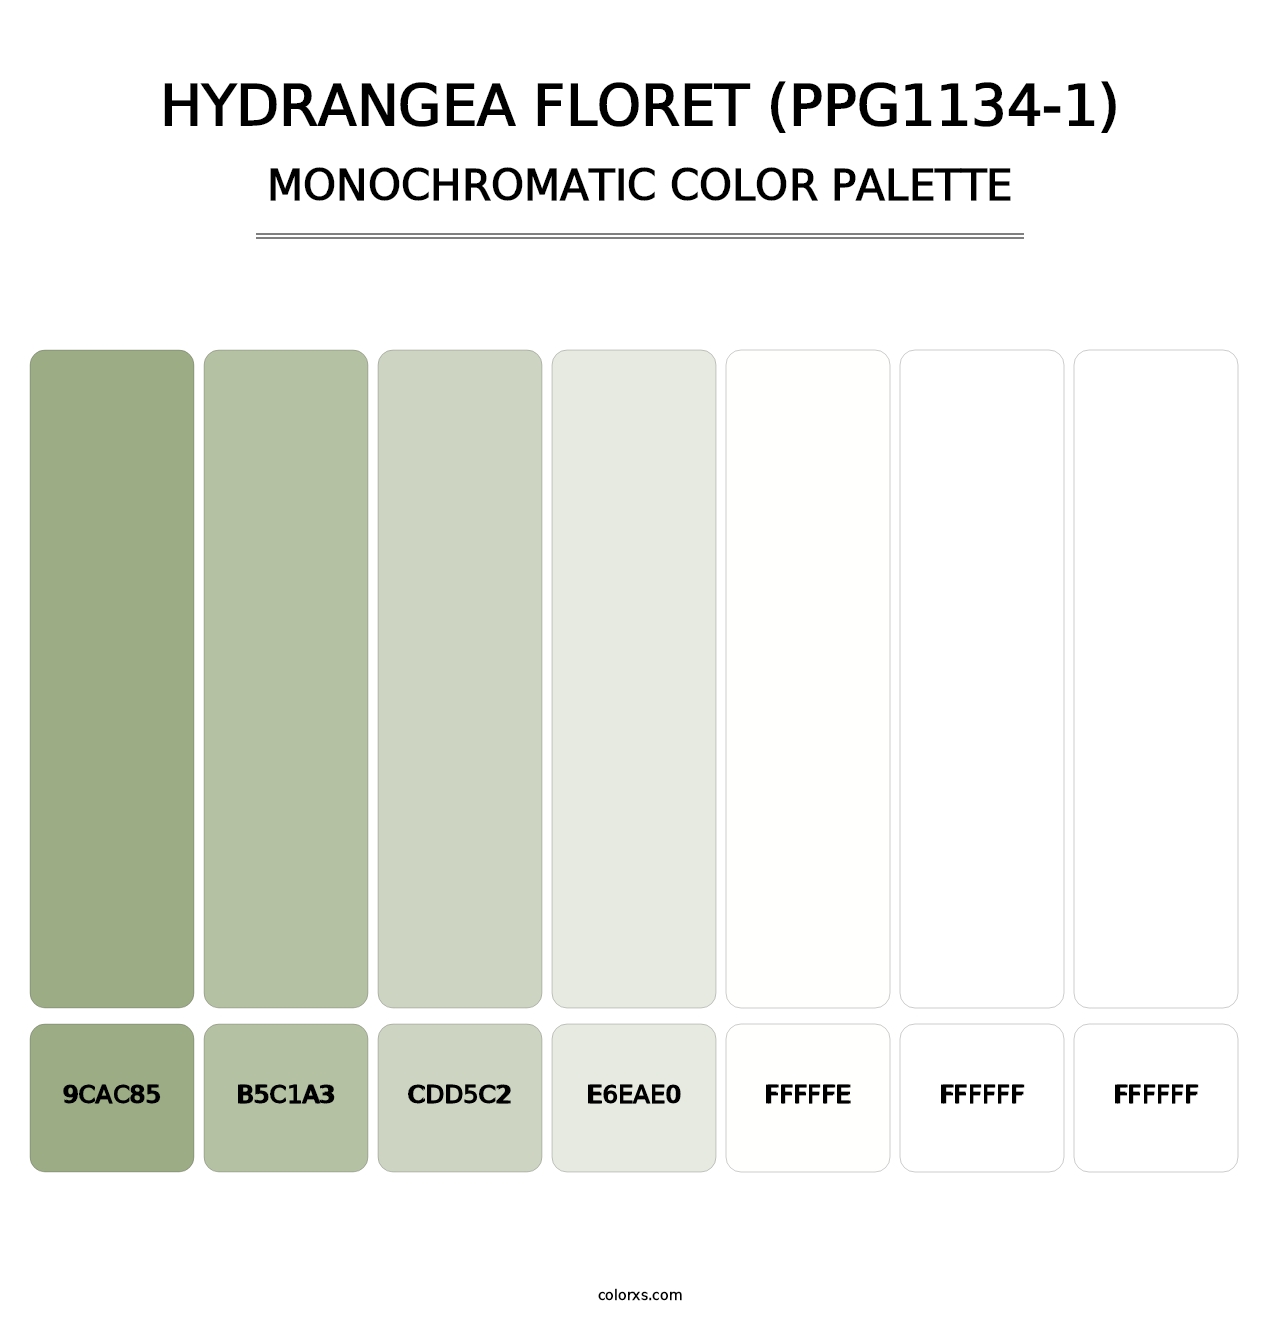 Hydrangea Floret (PPG1134-1) - Monochromatic Color Palette